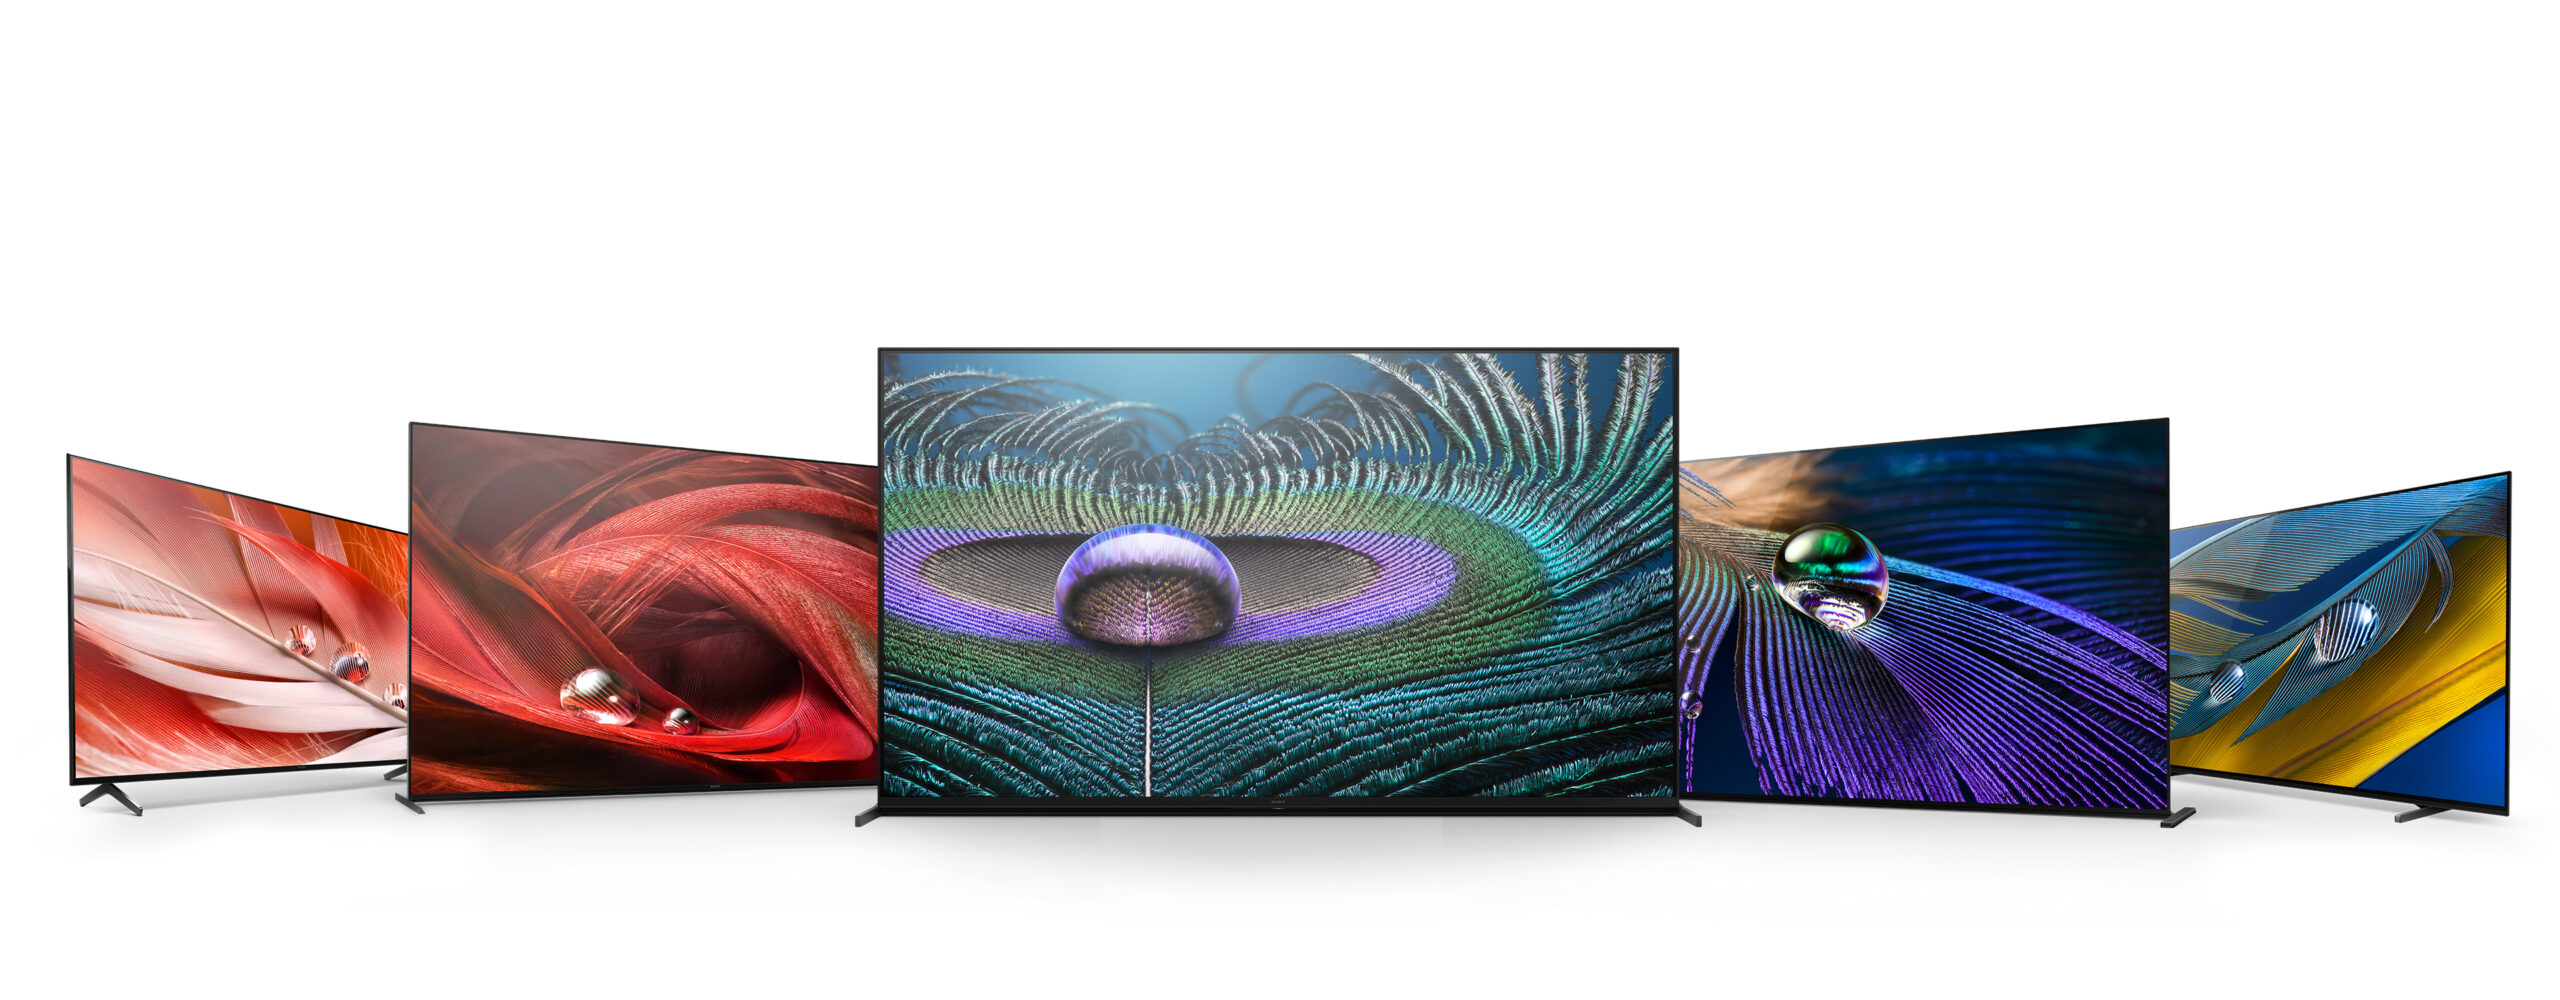 Sony presentó los primeros televisores del mundo con inteligencia cognitiva. Los nuevos televisores BRAVIA XR incluyen los modelos 8K LED MASTER serie Z9J